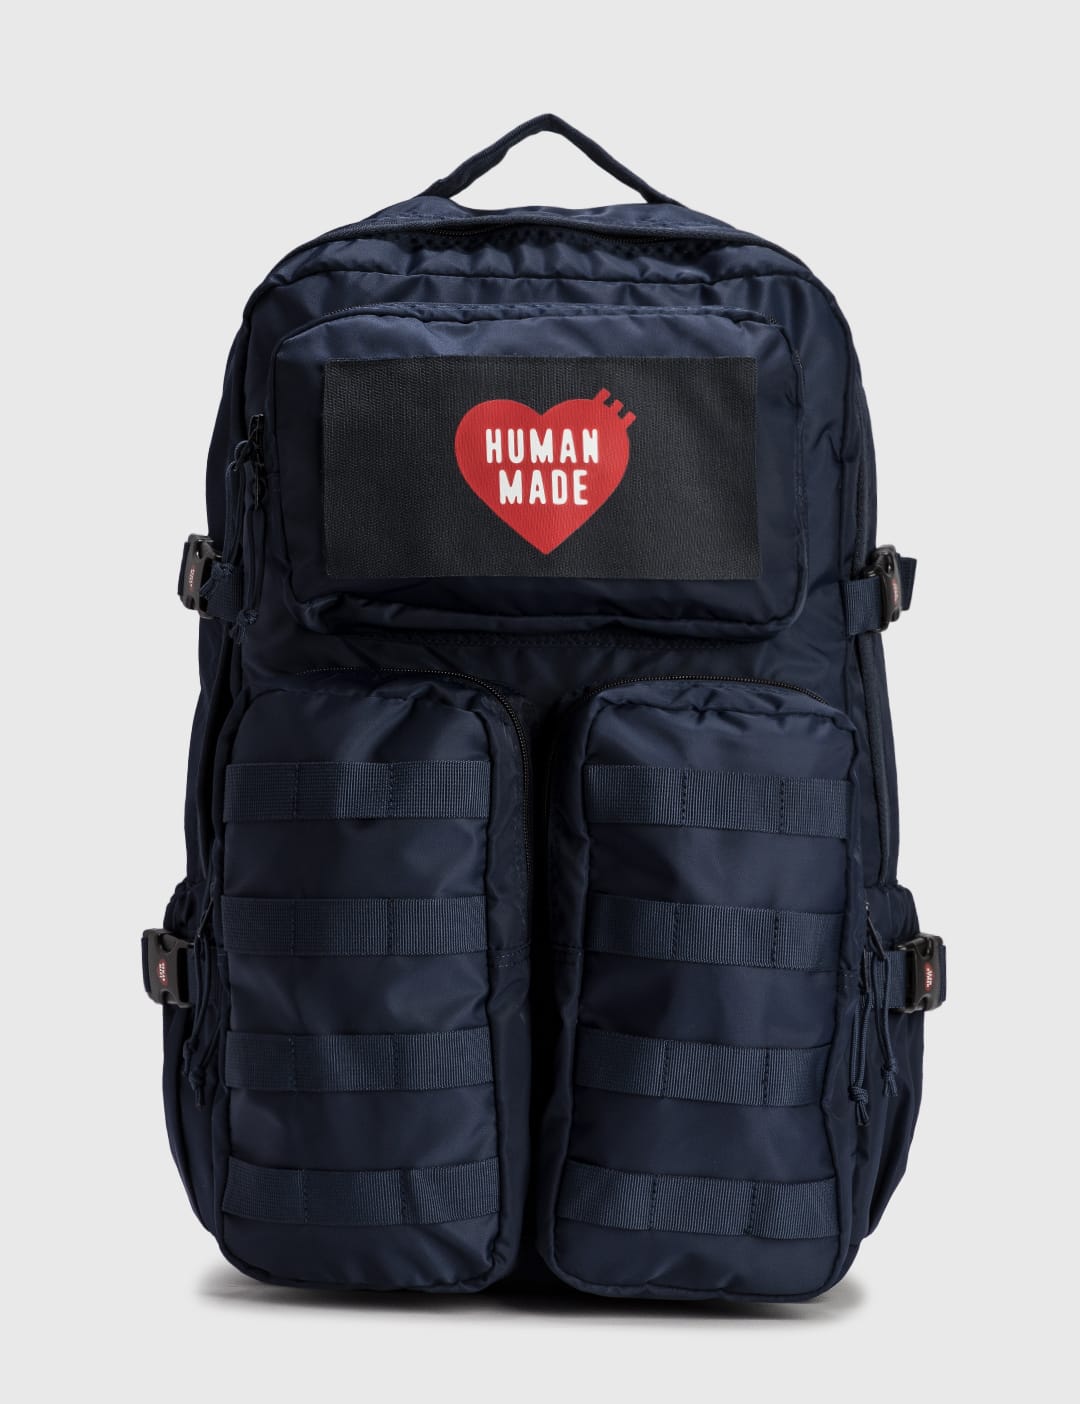 Human Made - Military Backpack | HBX - HYPEBEAST 为您搜罗全球潮流时尚品牌